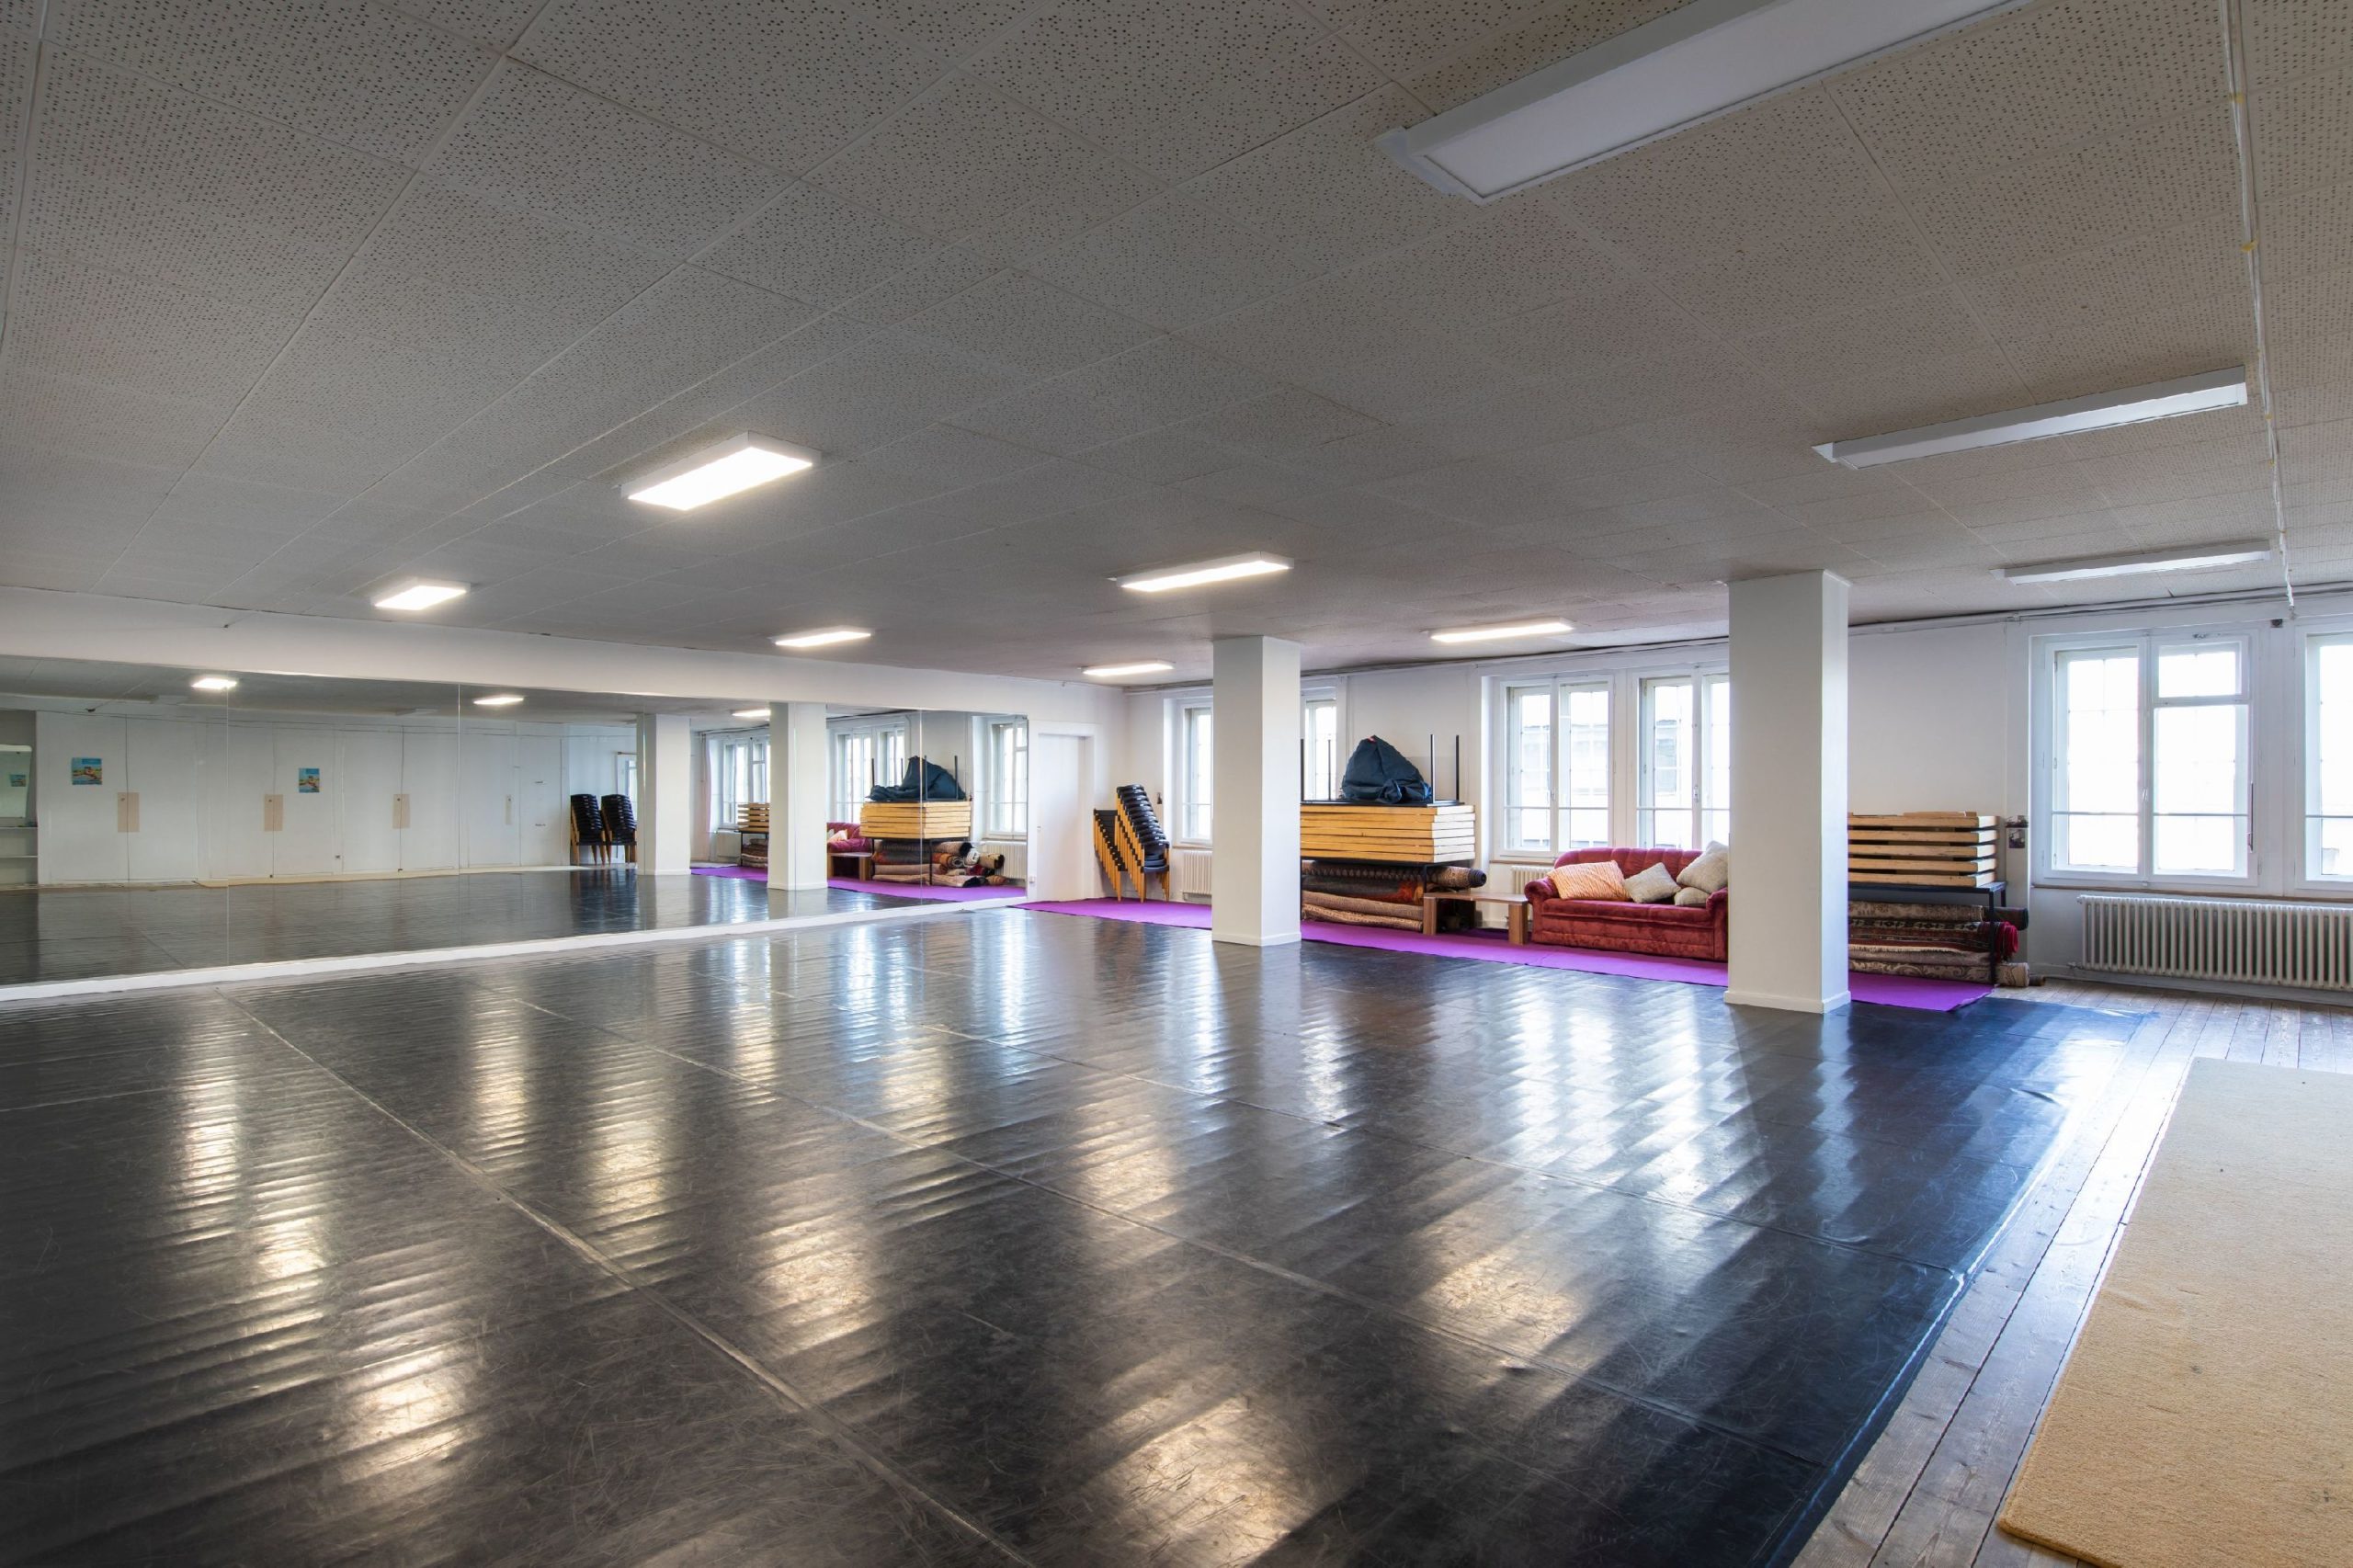 Salle Mon Viniyoga - yoga - lahochi - La Chaux-de-Fonds - Laetitia Conti - www.lconti.ch